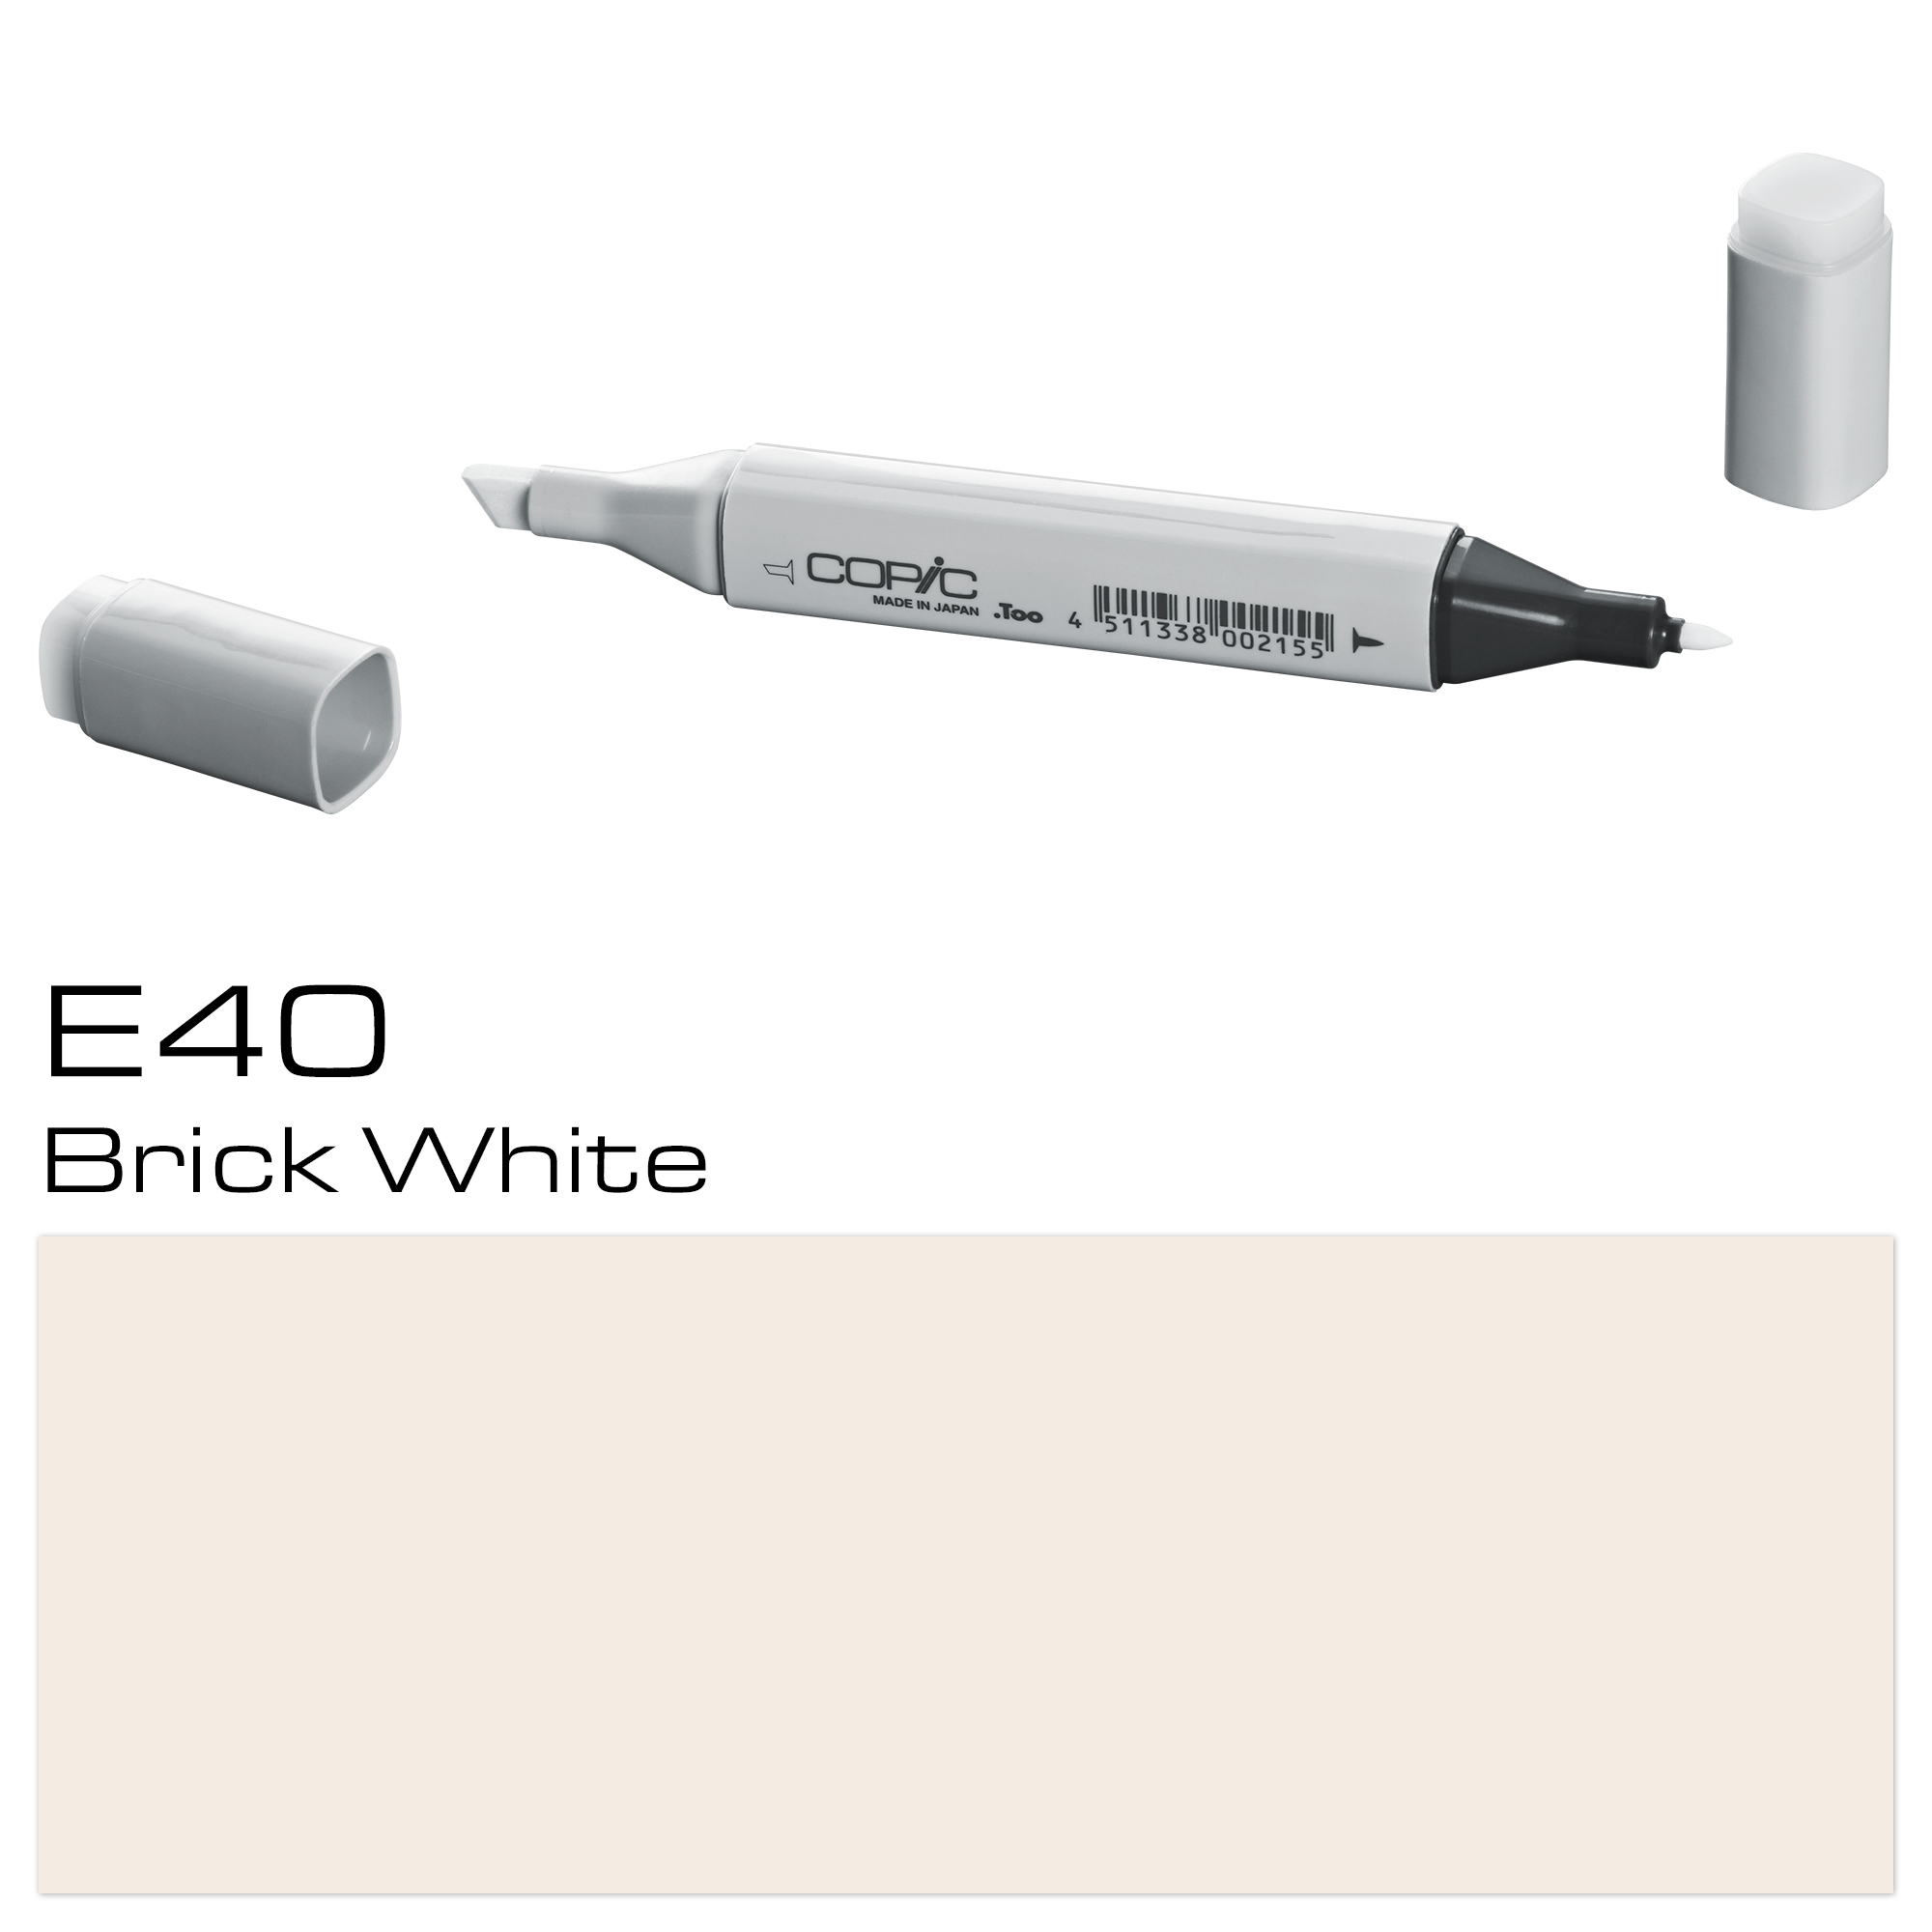 COPIC MARKER BRICK WHITE E40